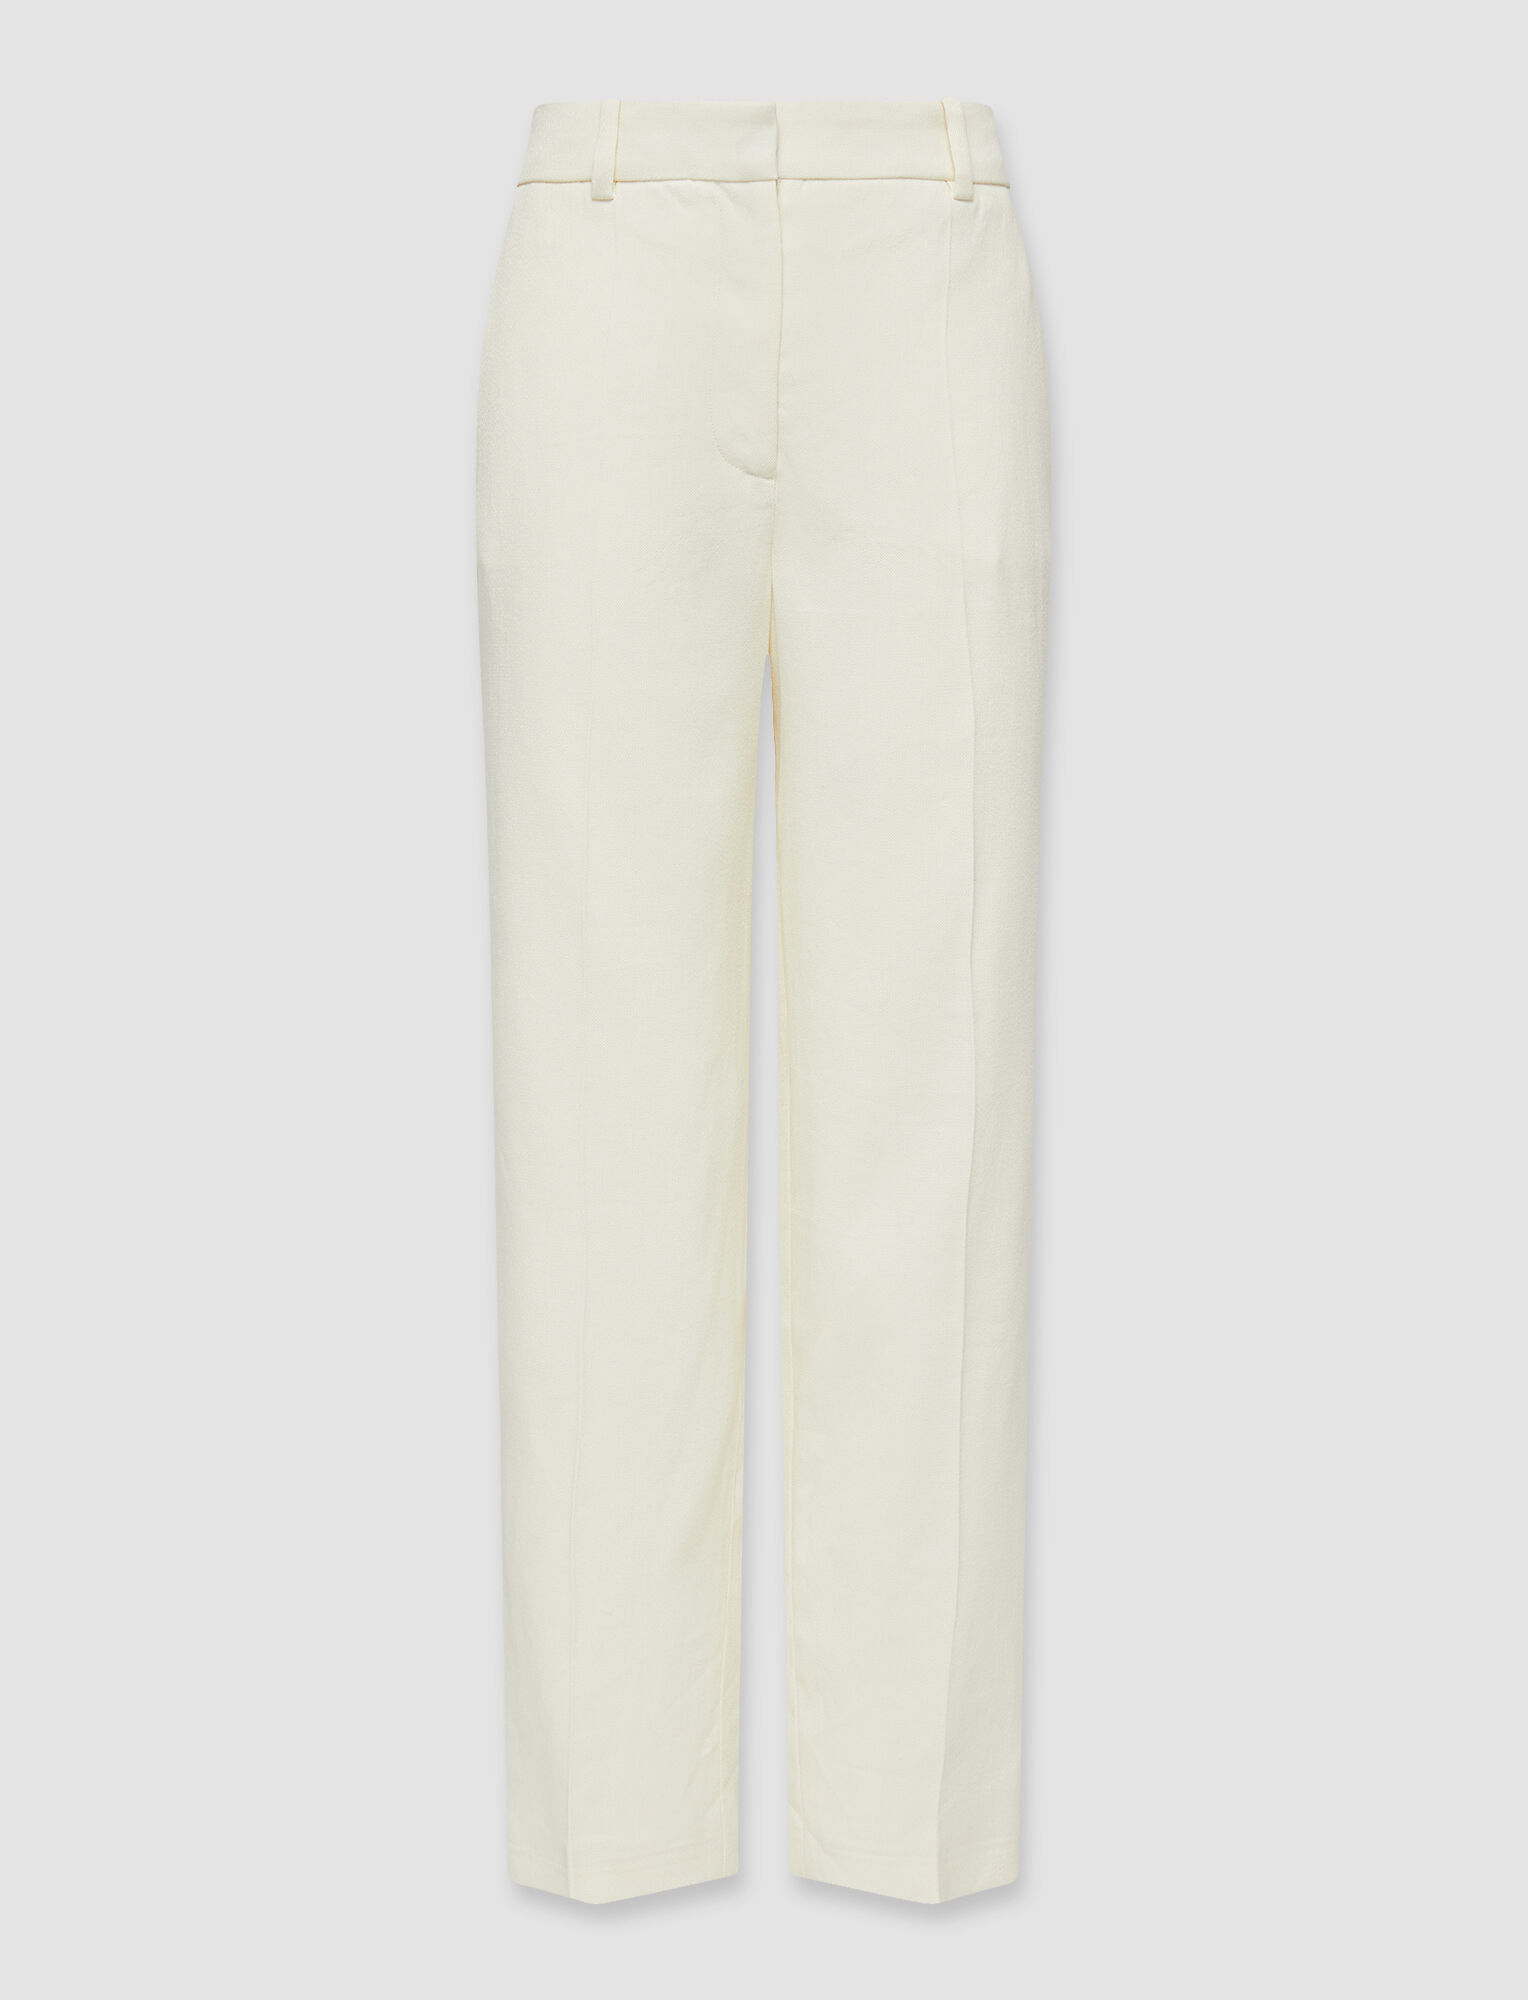 Crepe Linen Stretch Trina Trousers in White | JOSEPH